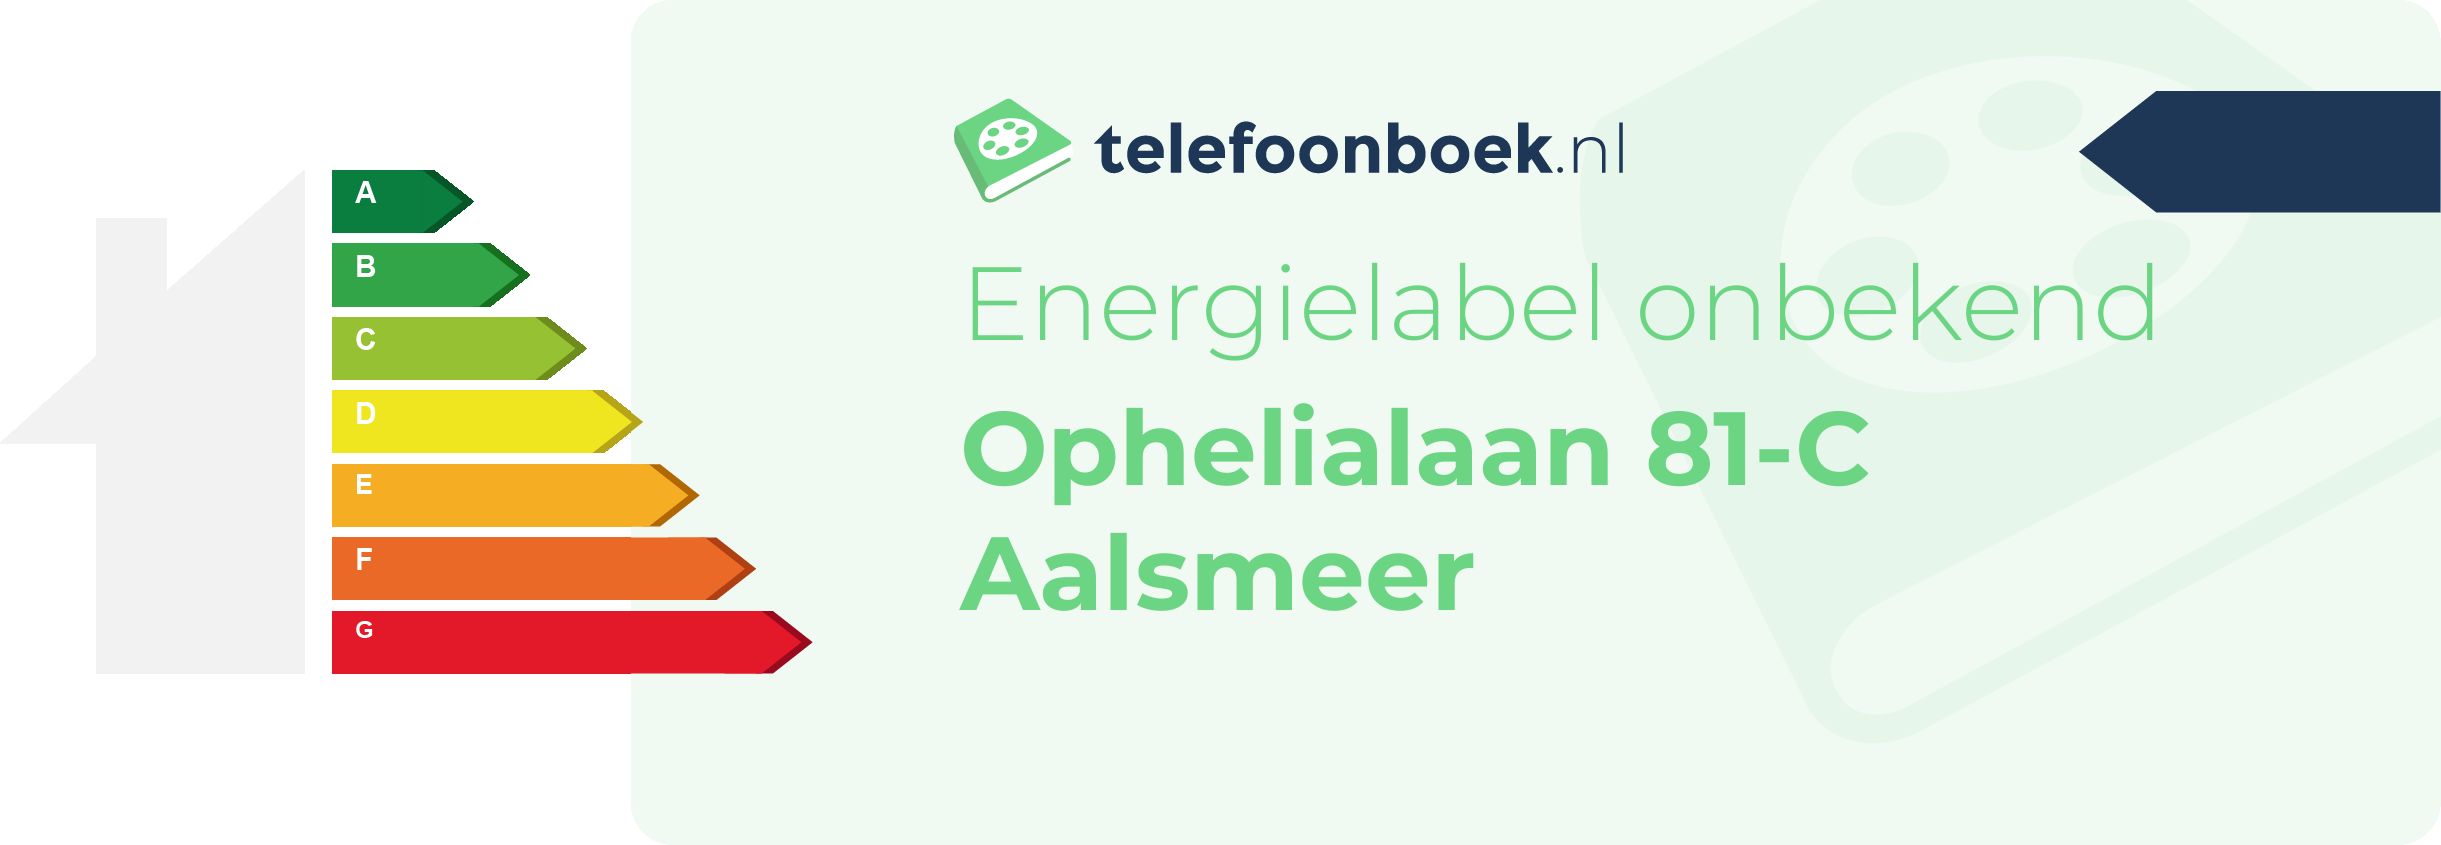 Energielabel Ophelialaan 81-C Aalsmeer